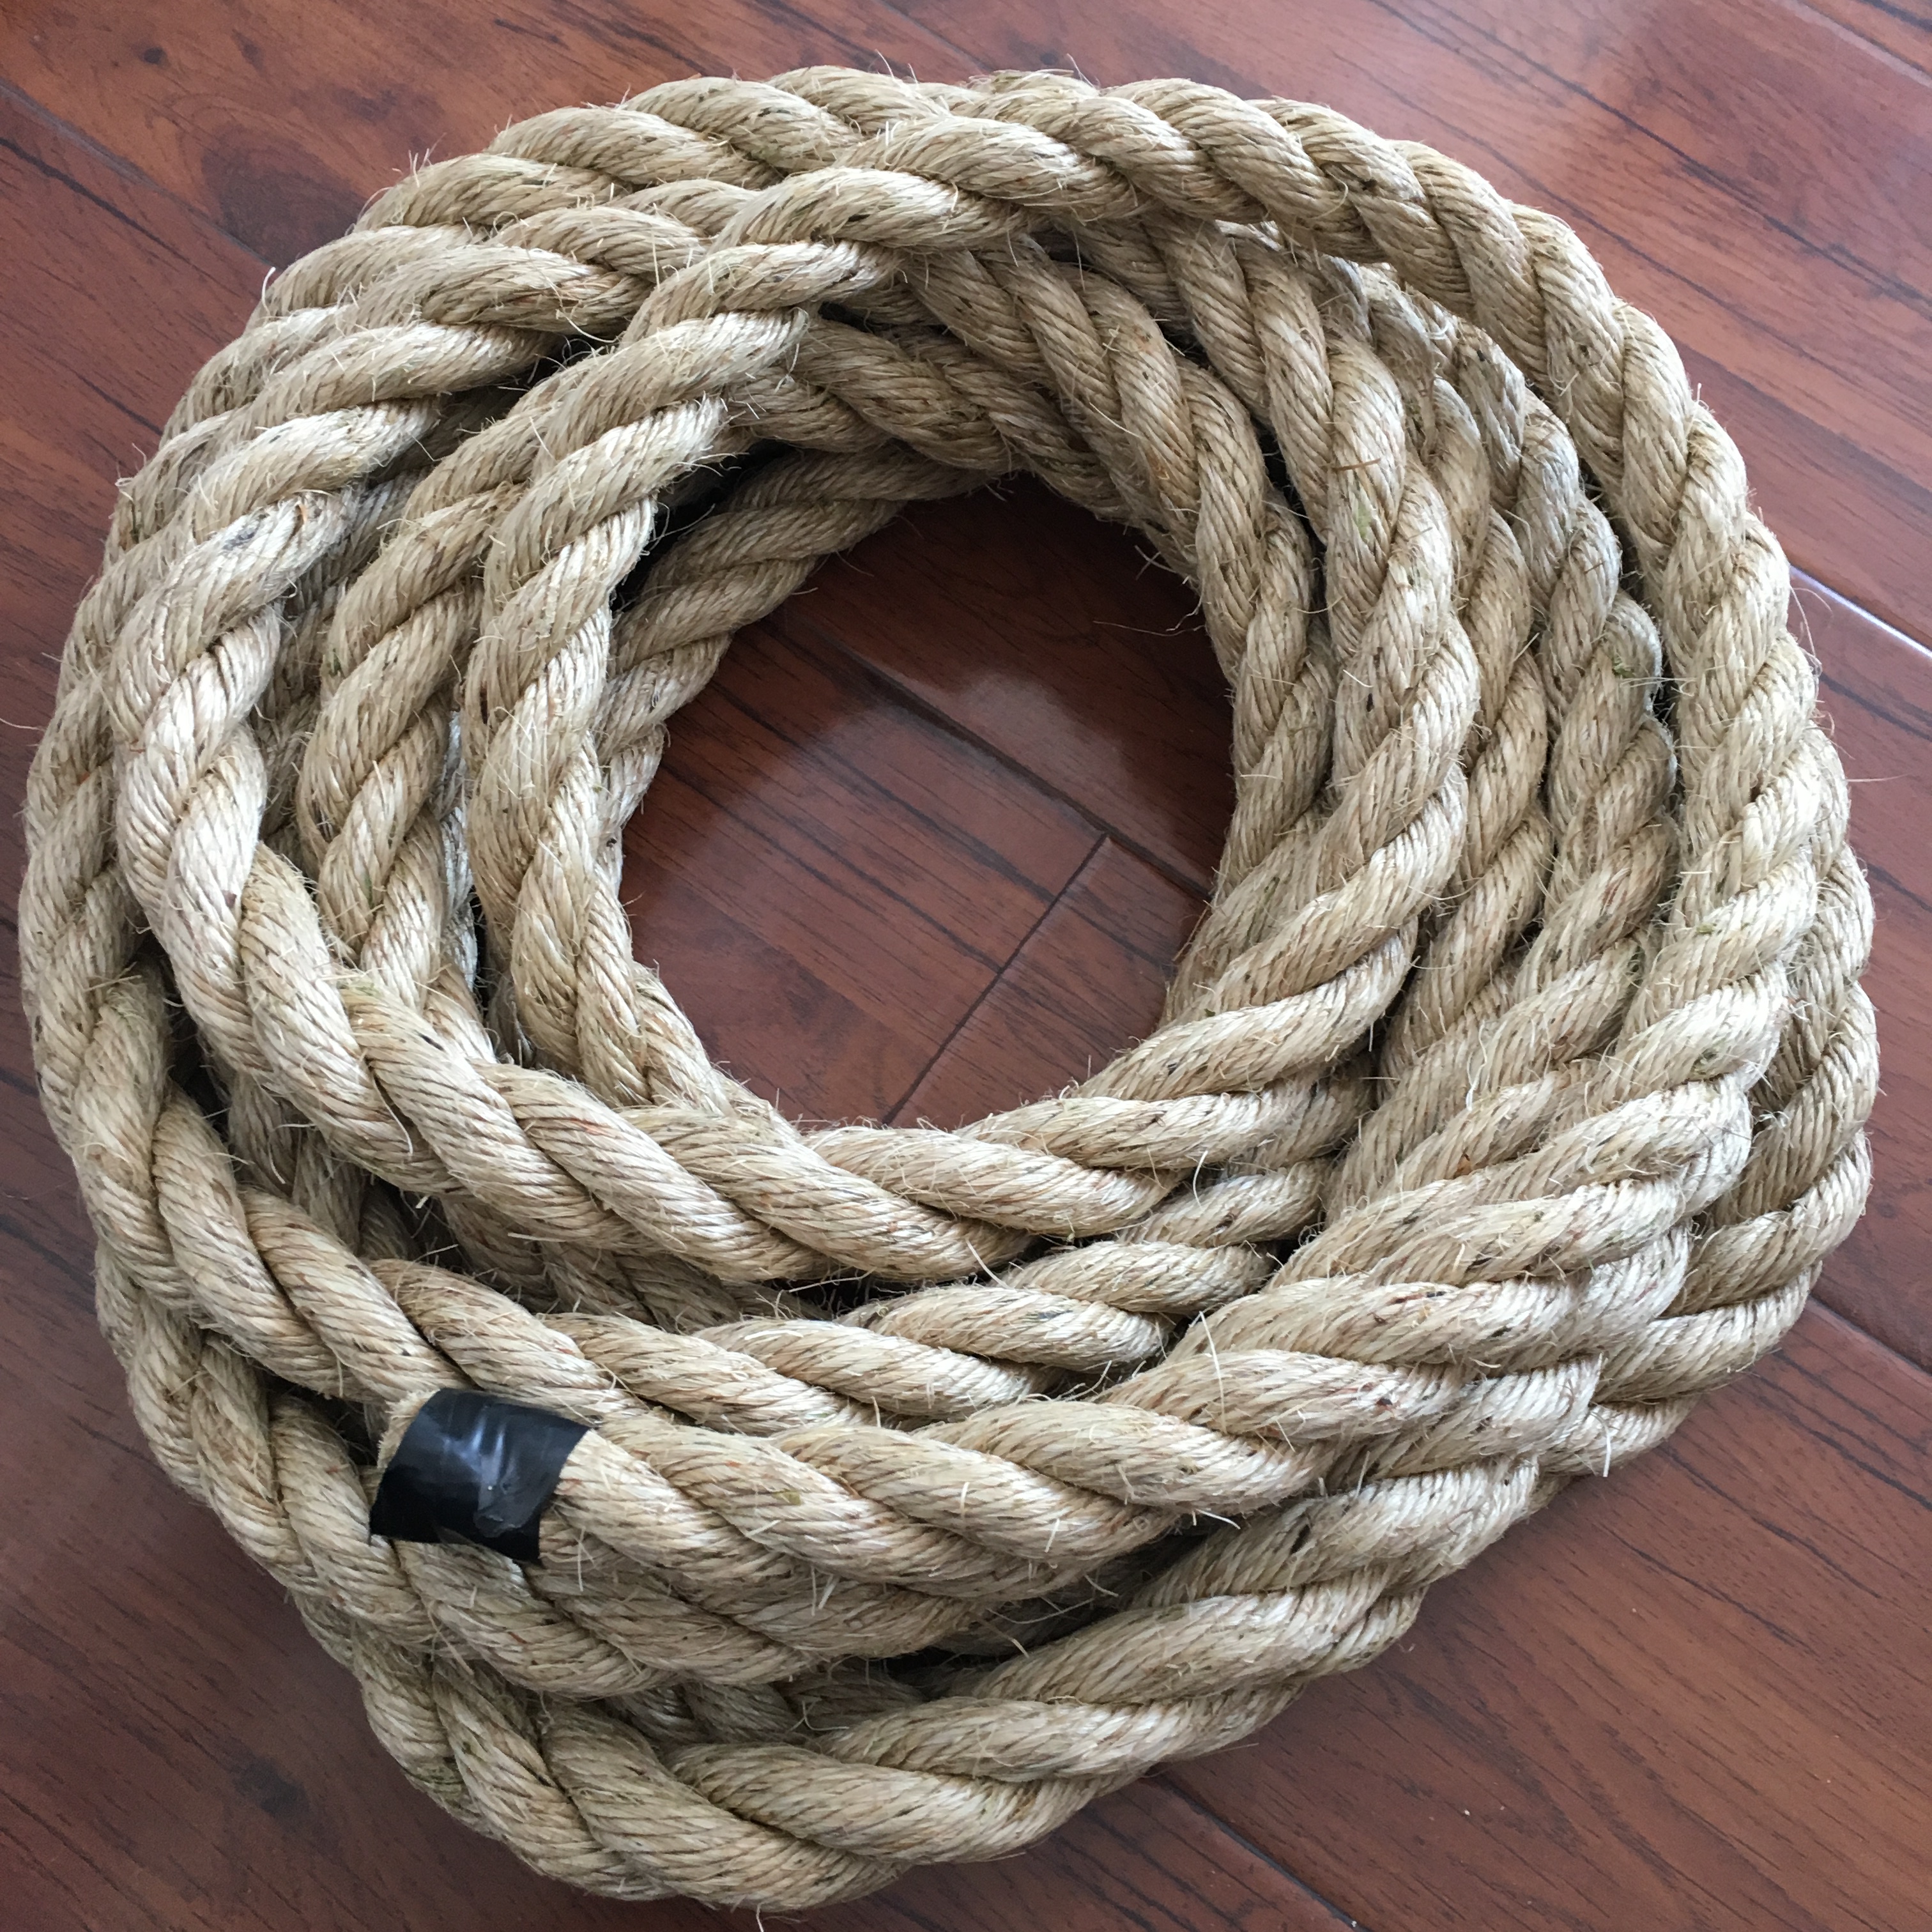 22mm sisal rope